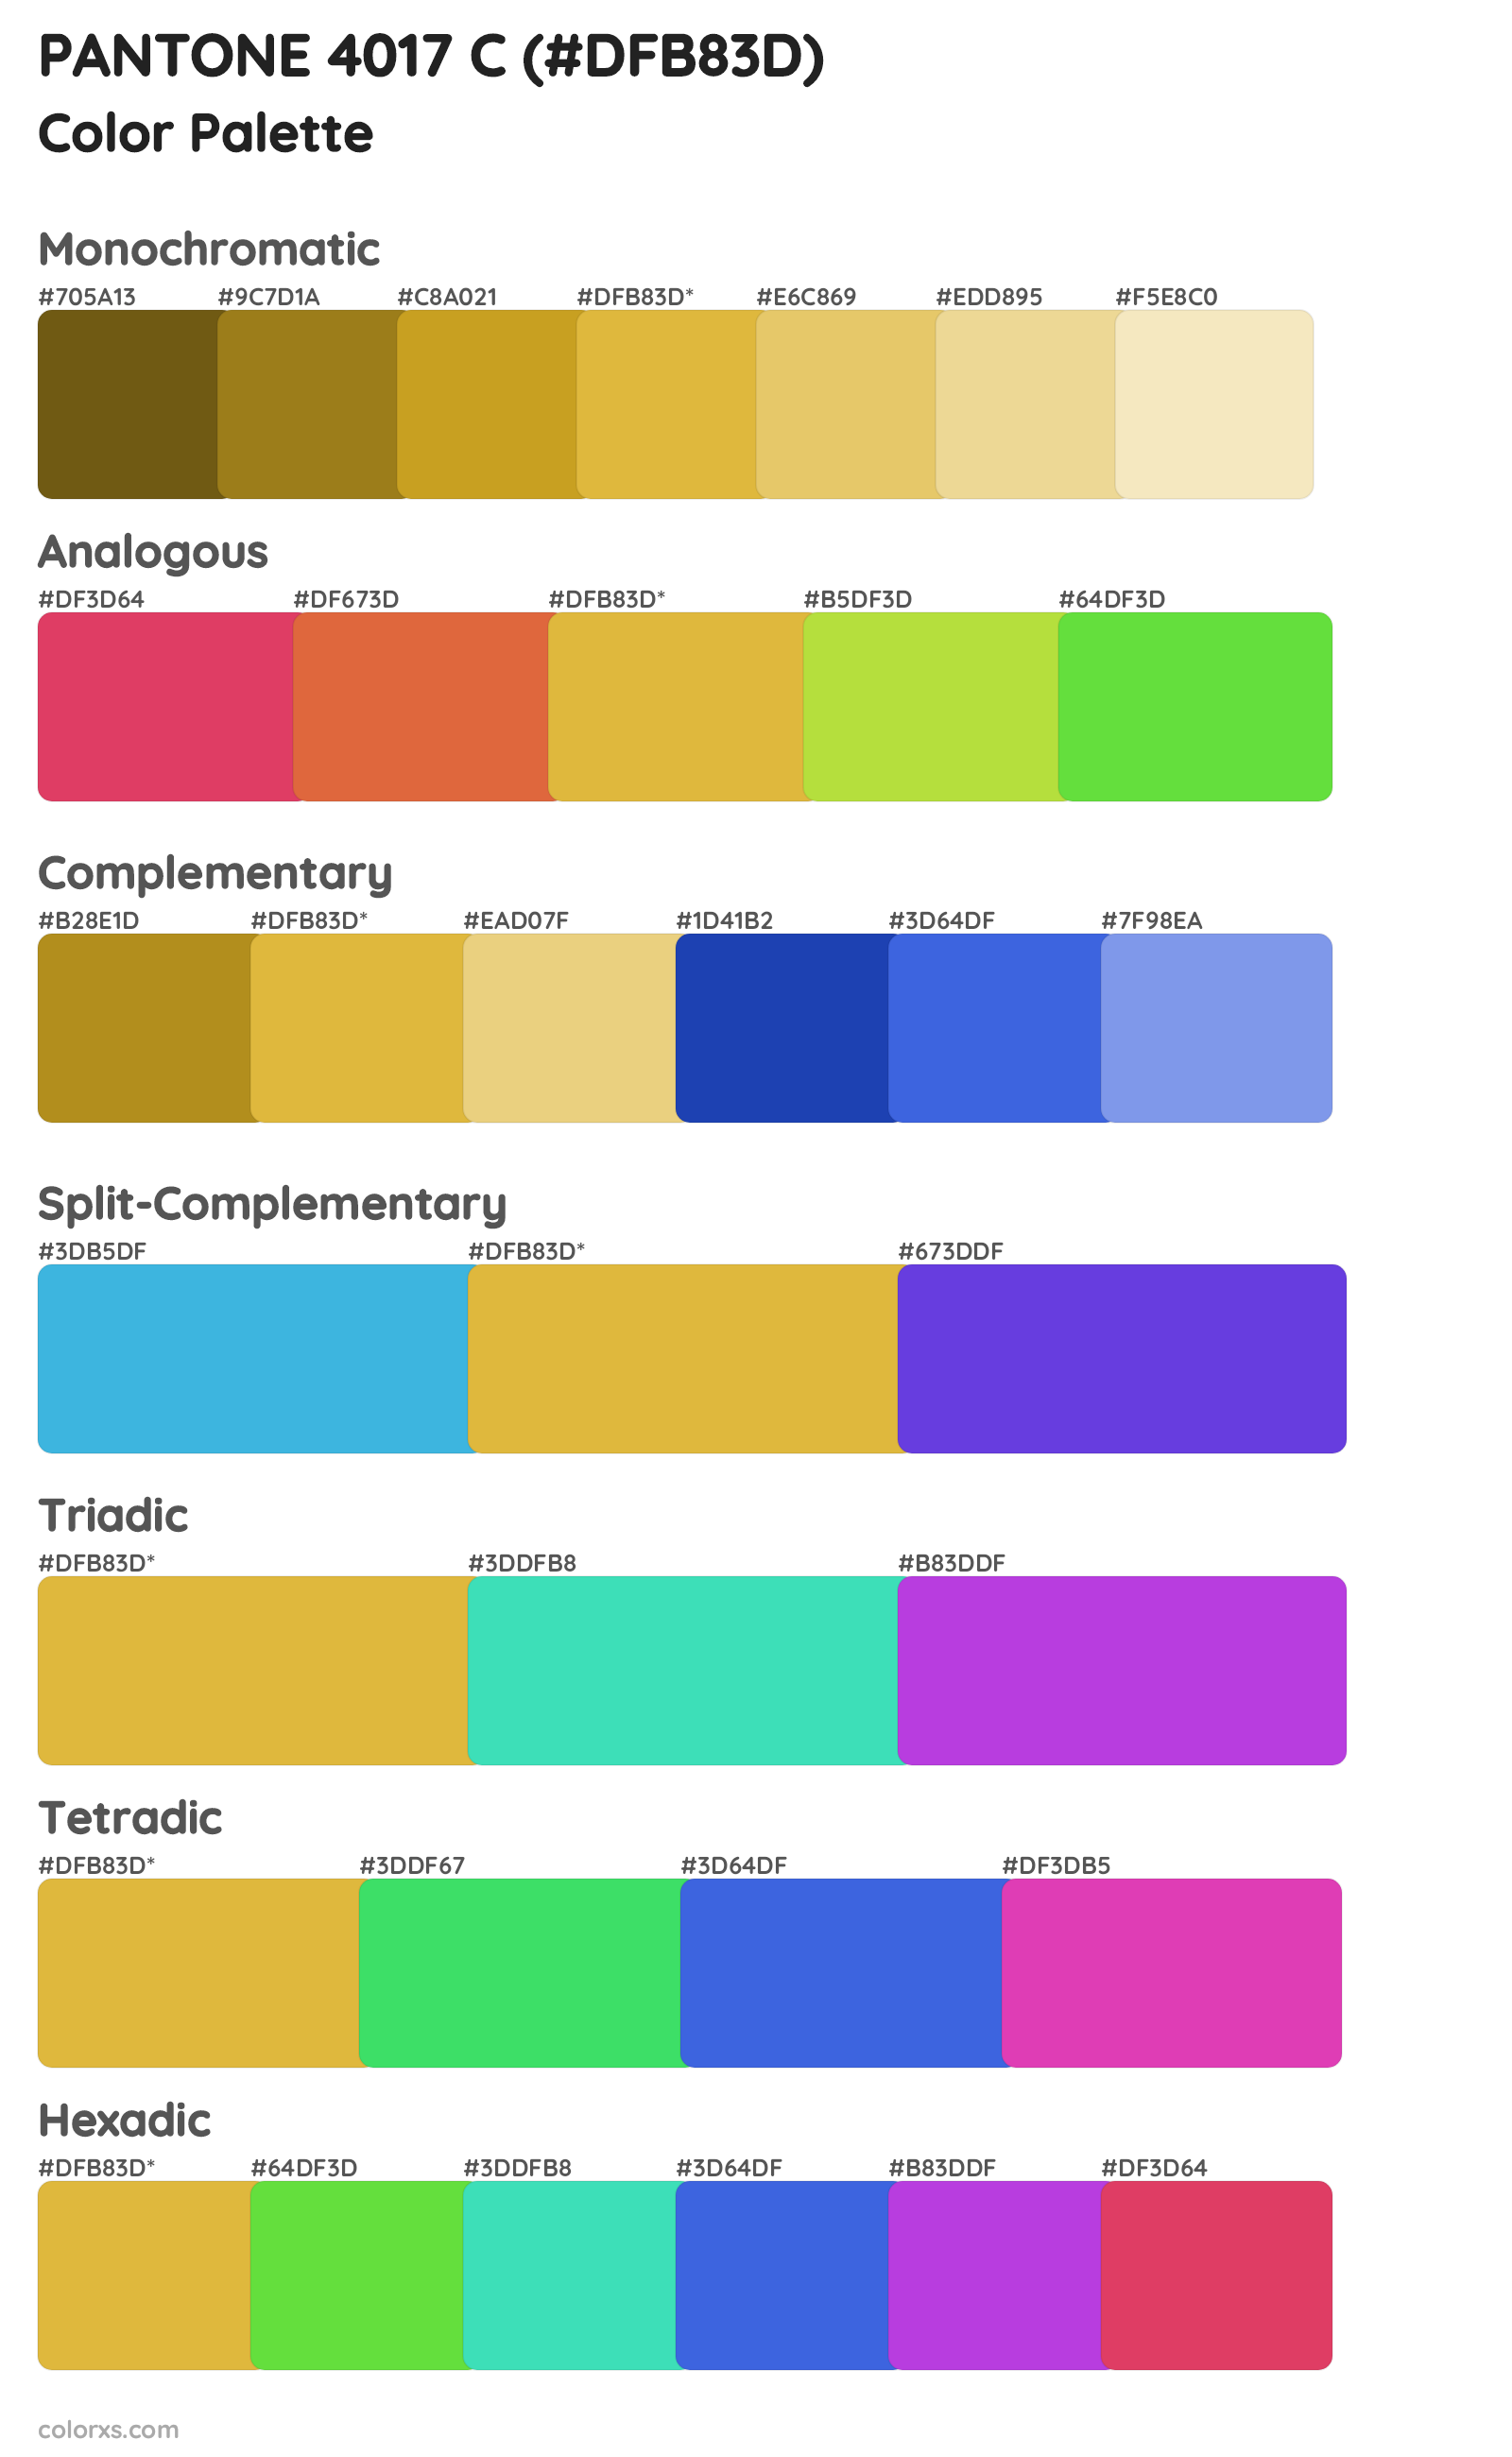 PANTONE 4017 C Color Scheme Palettes